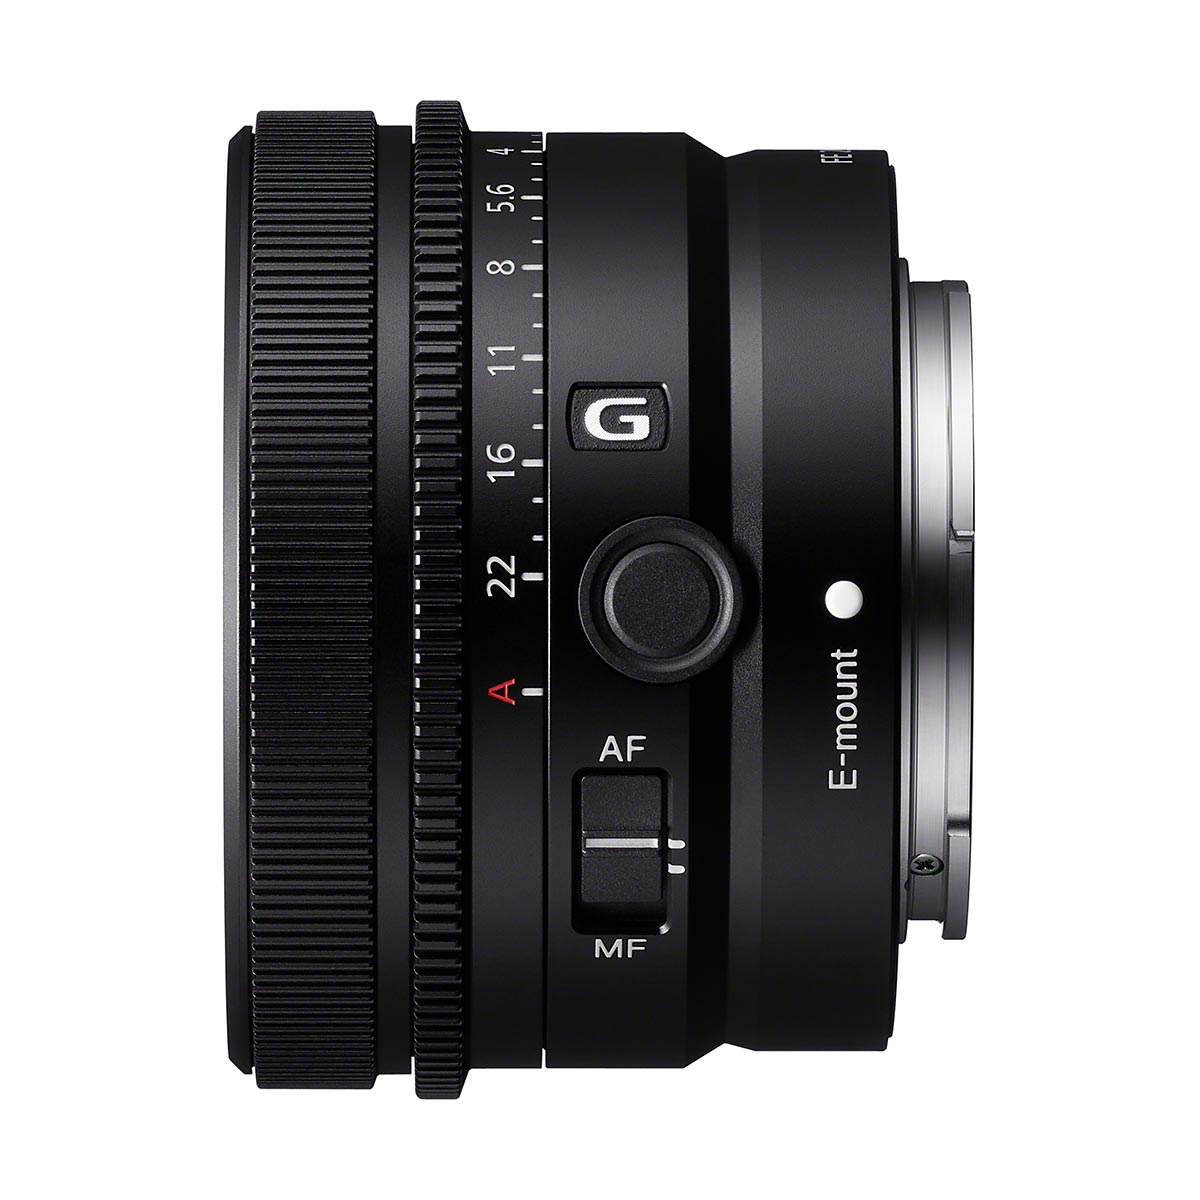 Sony FE 40mm f2.5 G Lens